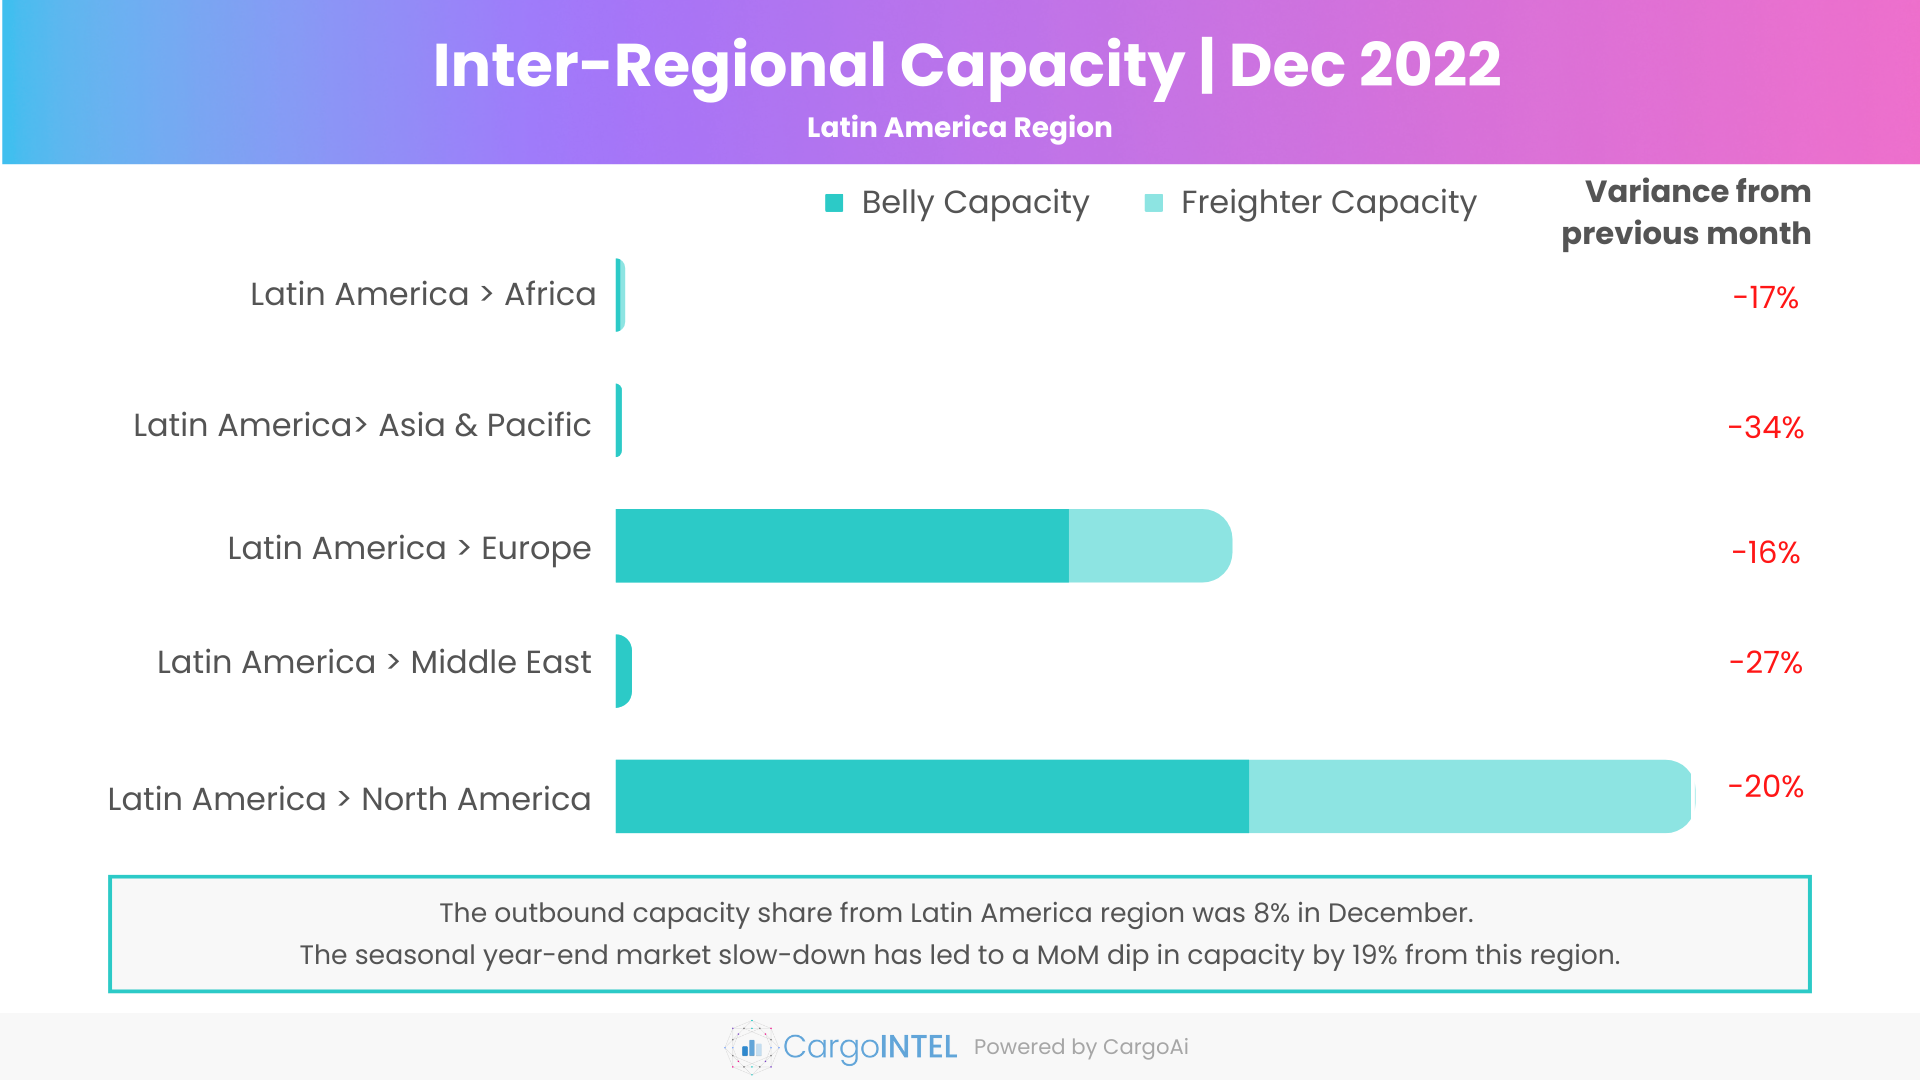 Air cargo capacity of Latin America region of Dec 2022